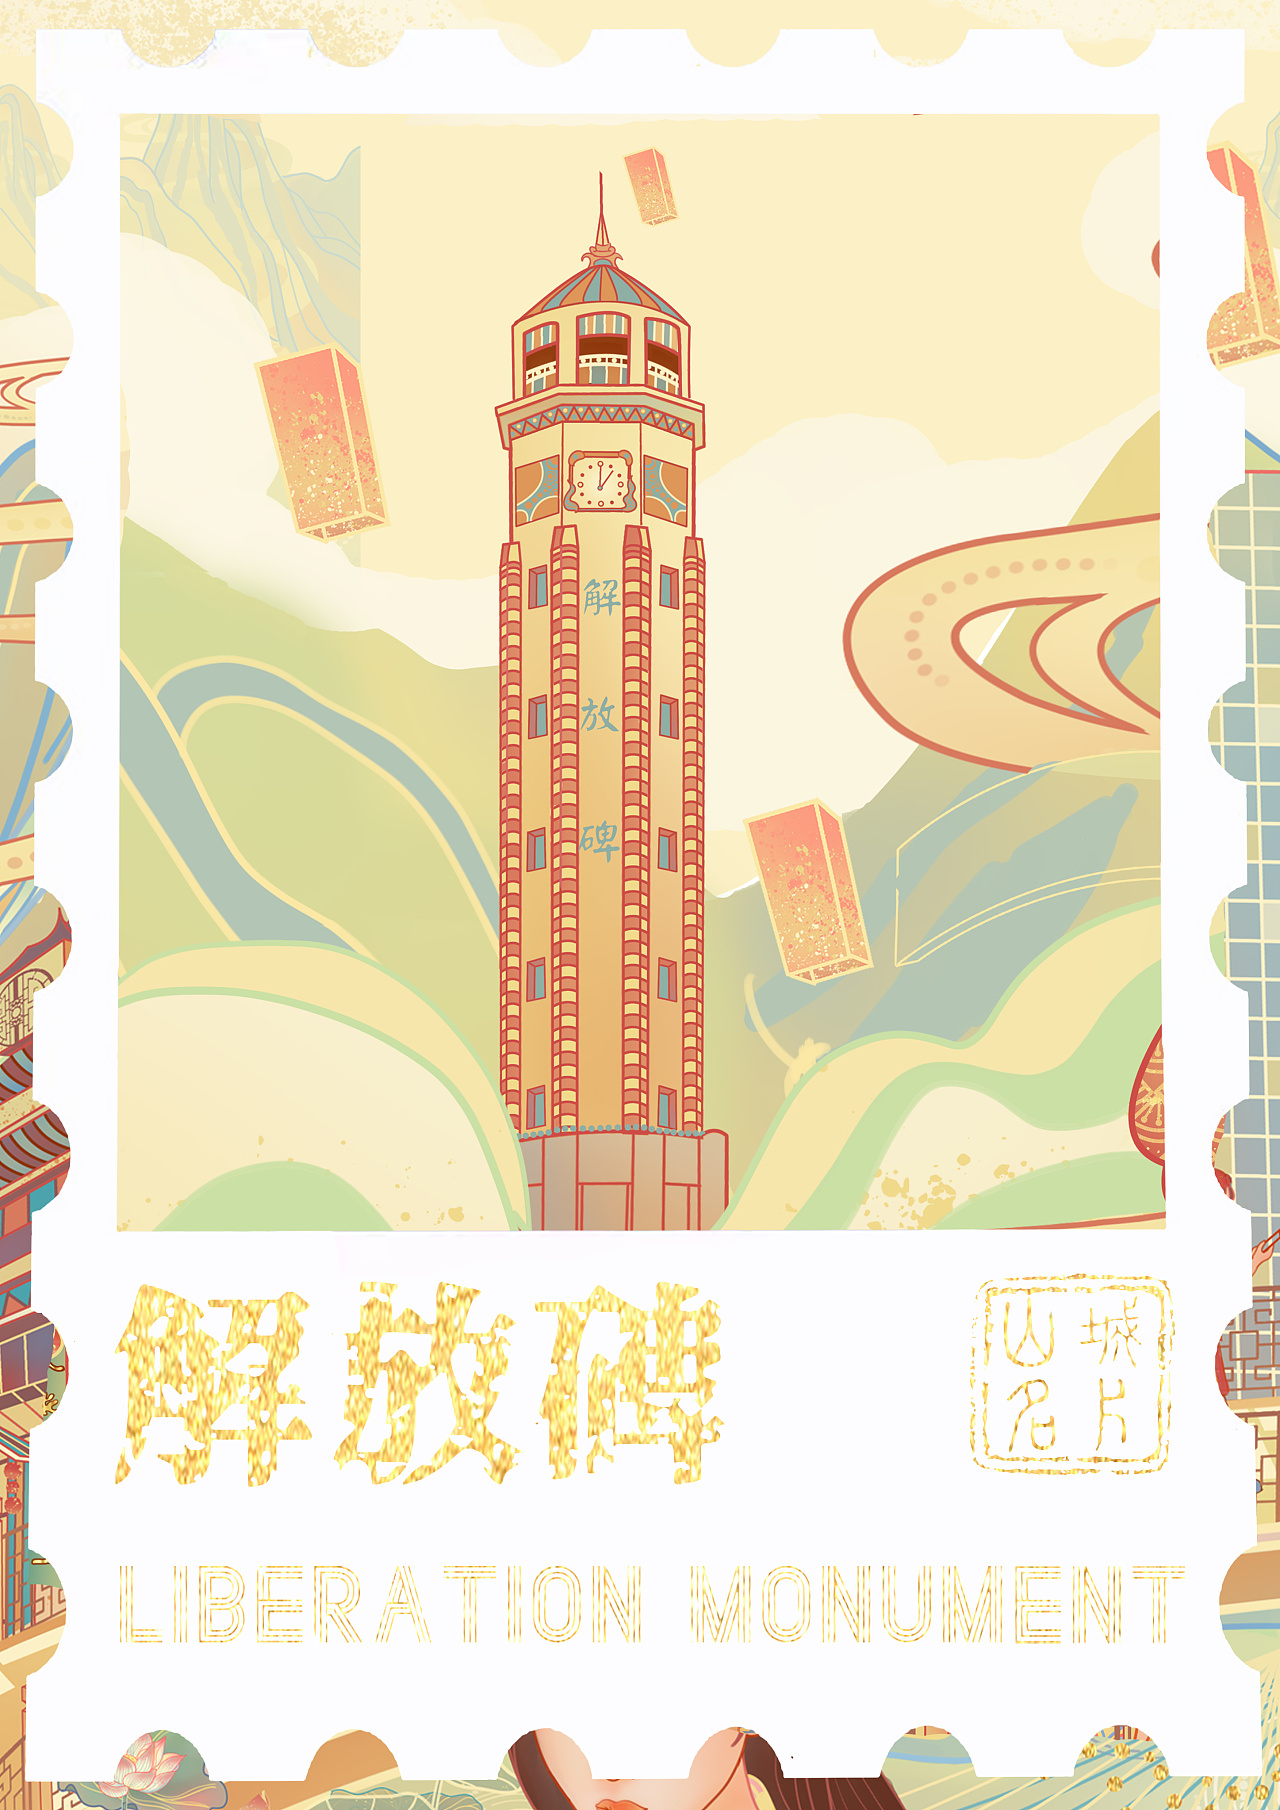 重庆,简称"渝"别称山城,重庆是中国重要的旅游城市,有洪崖洞,朝天门